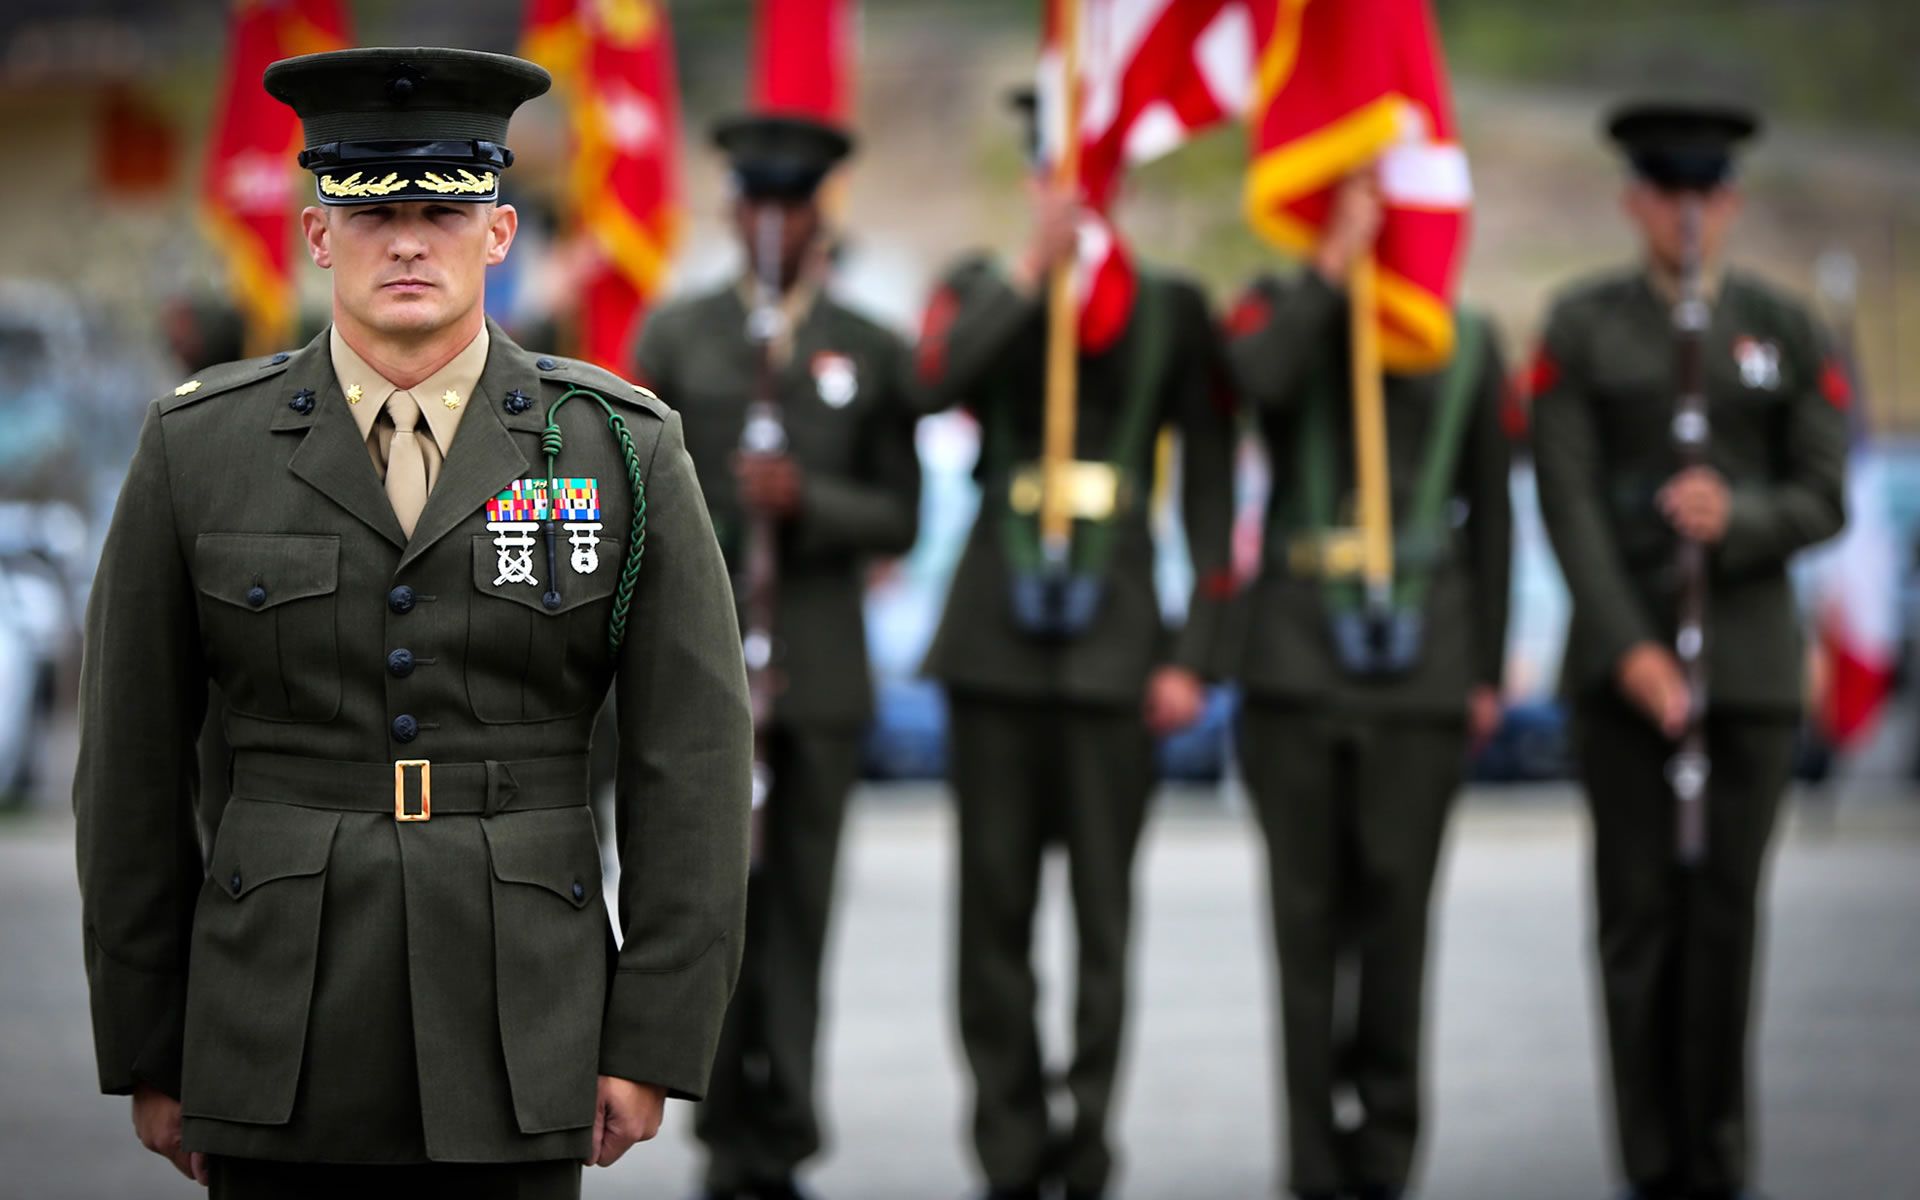 United States Marine Uniform